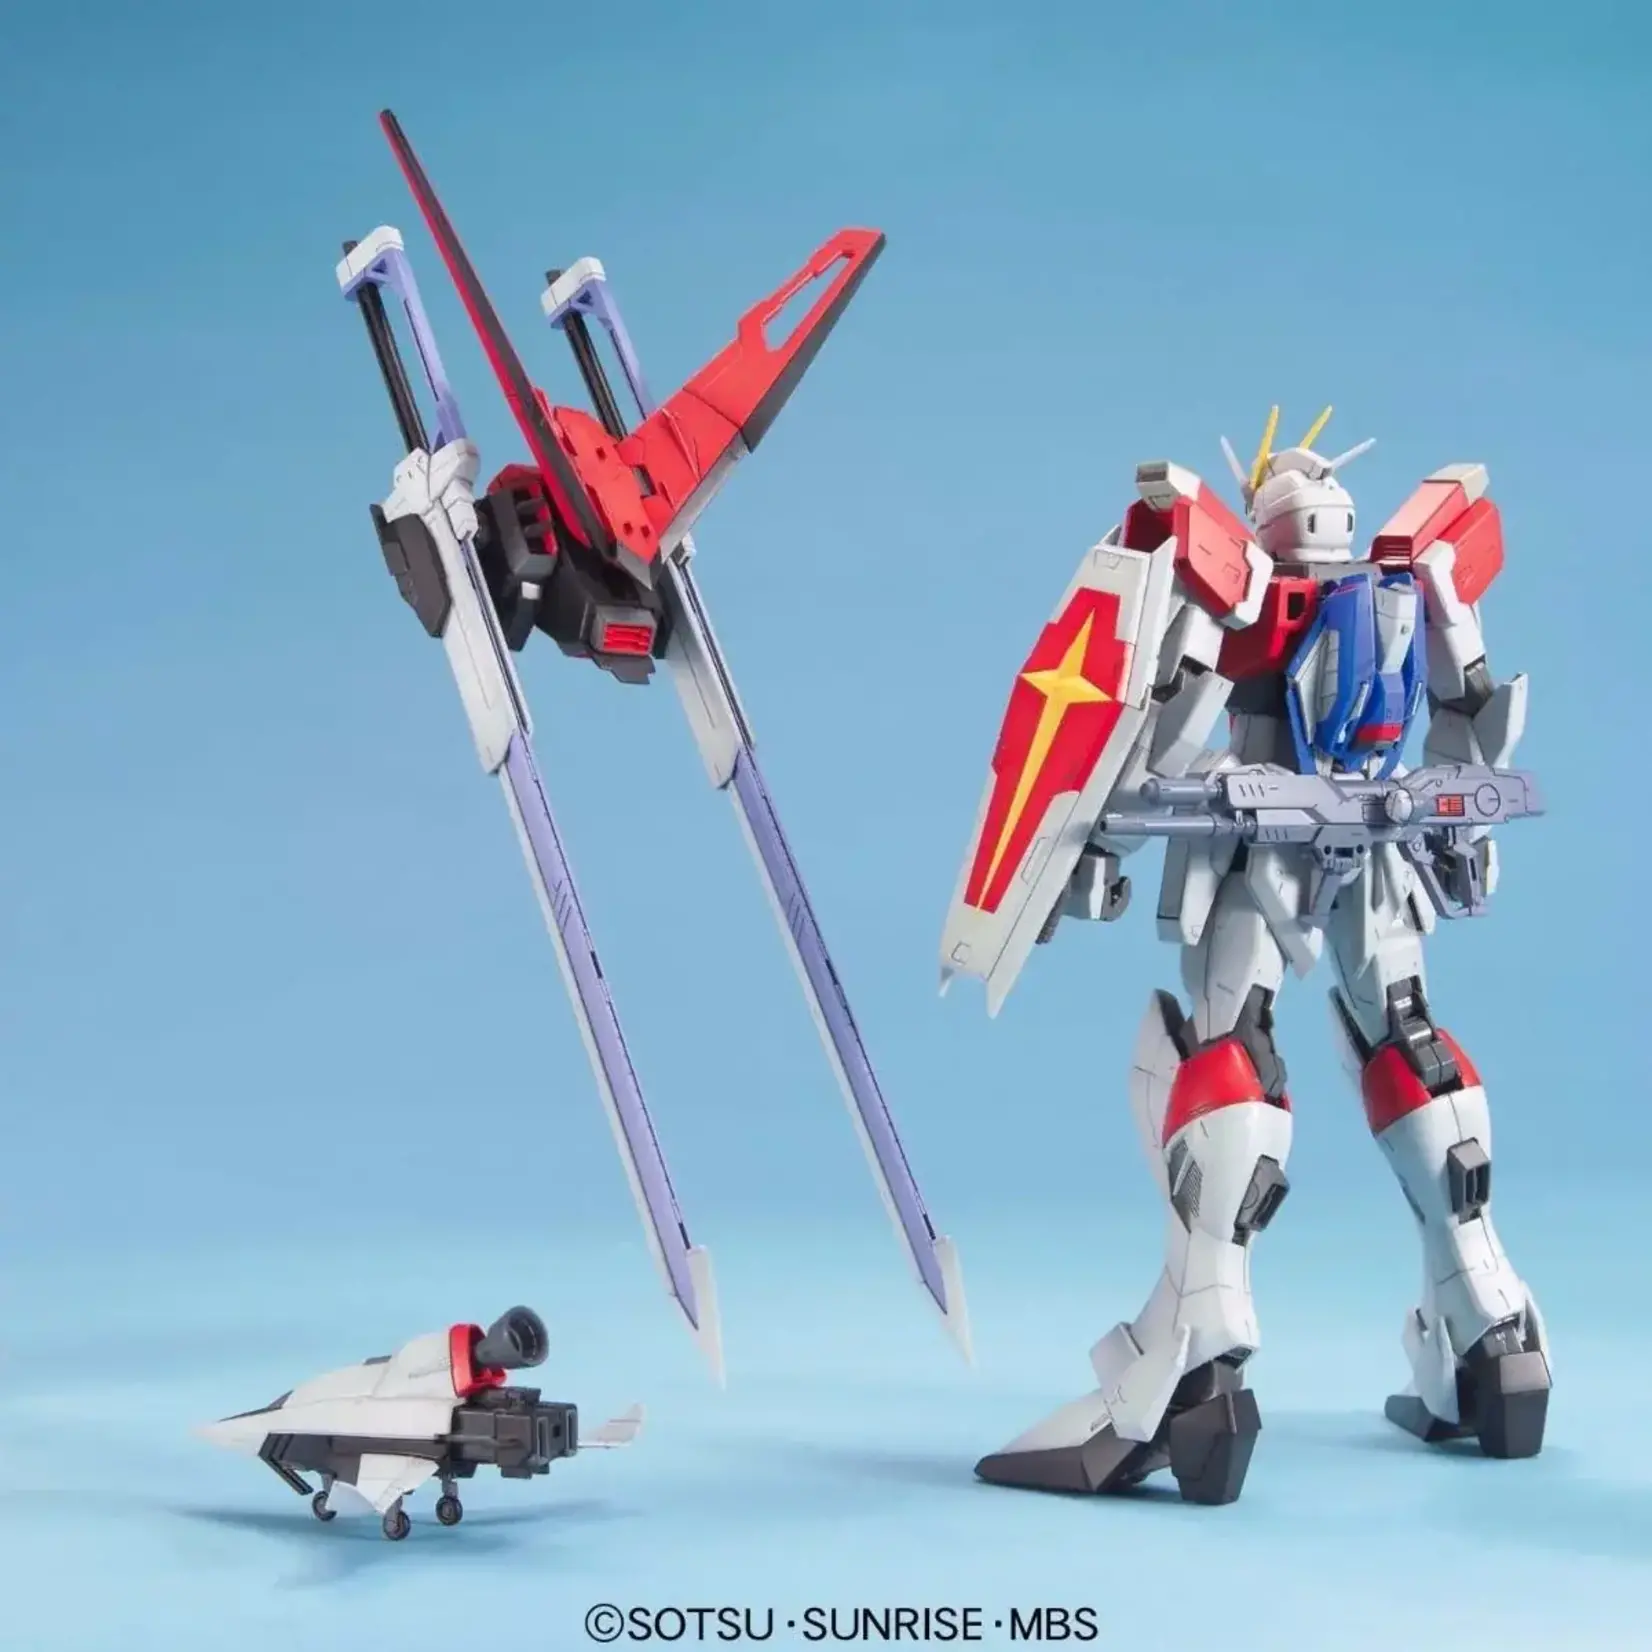 Bandai Bandai 2059041 MG Sword Impulse Gundam "Gundam SEED Destiny"